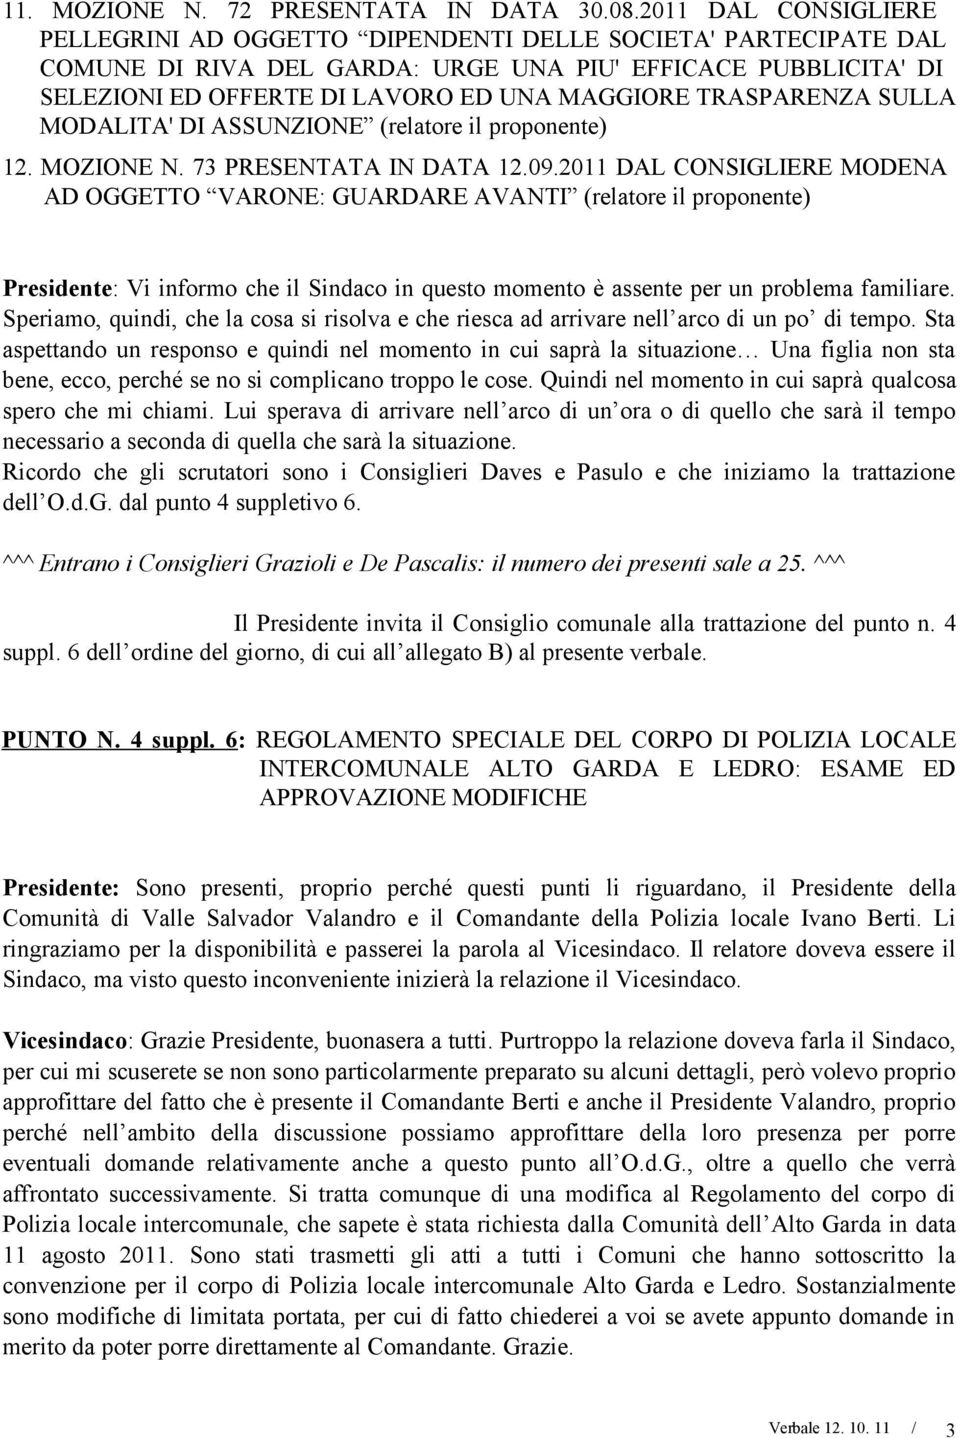 TRASPARENZA SULLA MODALITA' DI ASSUNZIONE (relatore il proponente) 12. MOZIONE N. 73 PRESENTATA IN DATA 12.09.